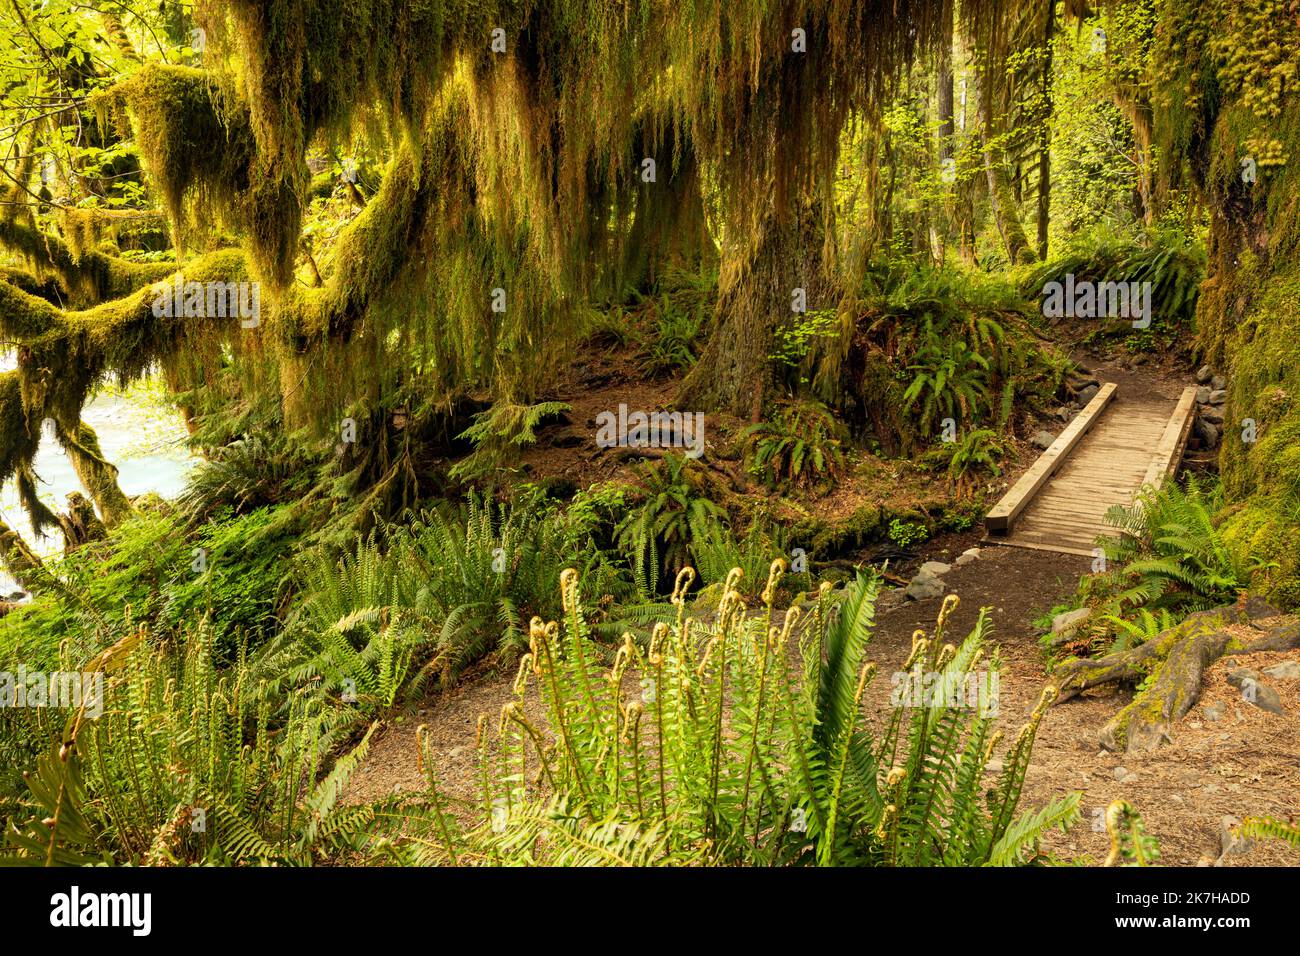 WA22344-00...WASHINGTON - albero di acero di foglia grande coperto di muschio visto lungo il percorso del fiume di Hoh nella foresta pluviale di Hoh nel parco nazionale olimpico. Foto Stock